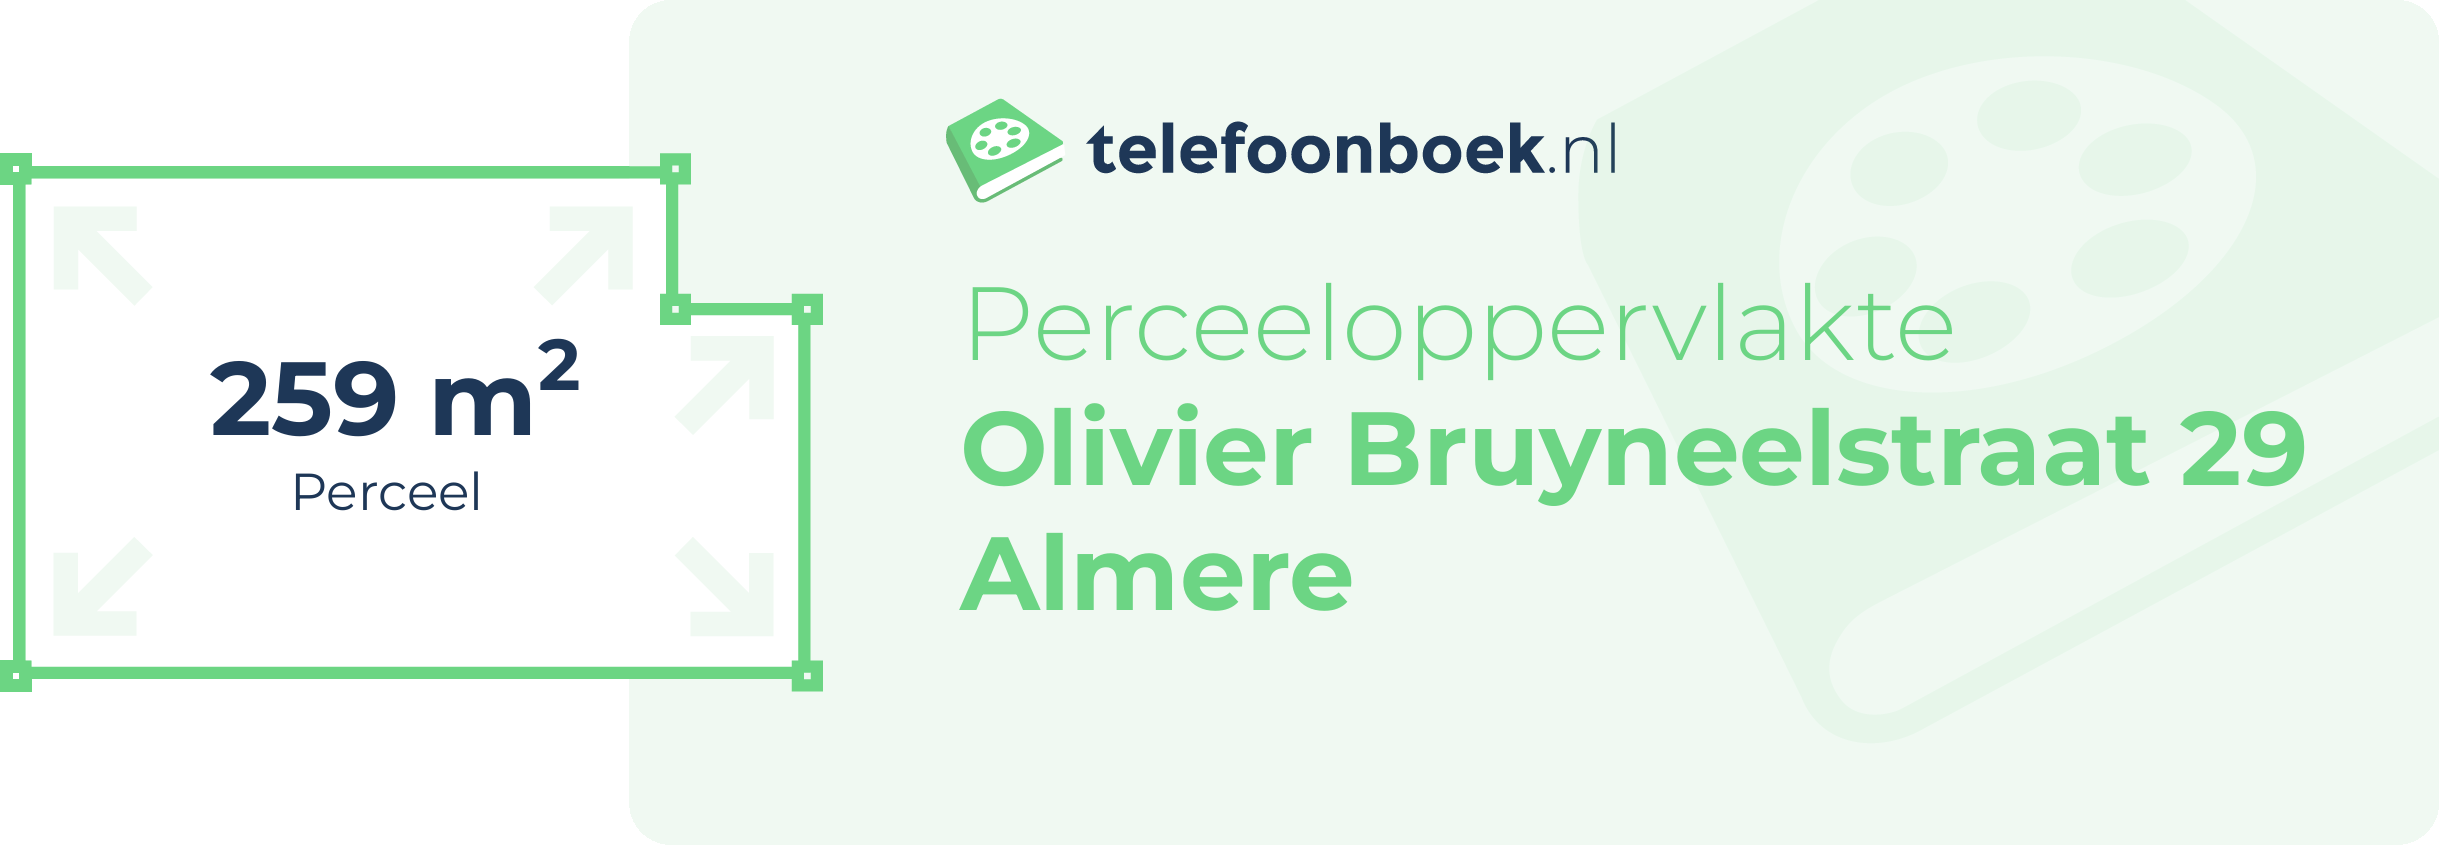 Perceeloppervlakte Olivier Bruyneelstraat 29 Almere